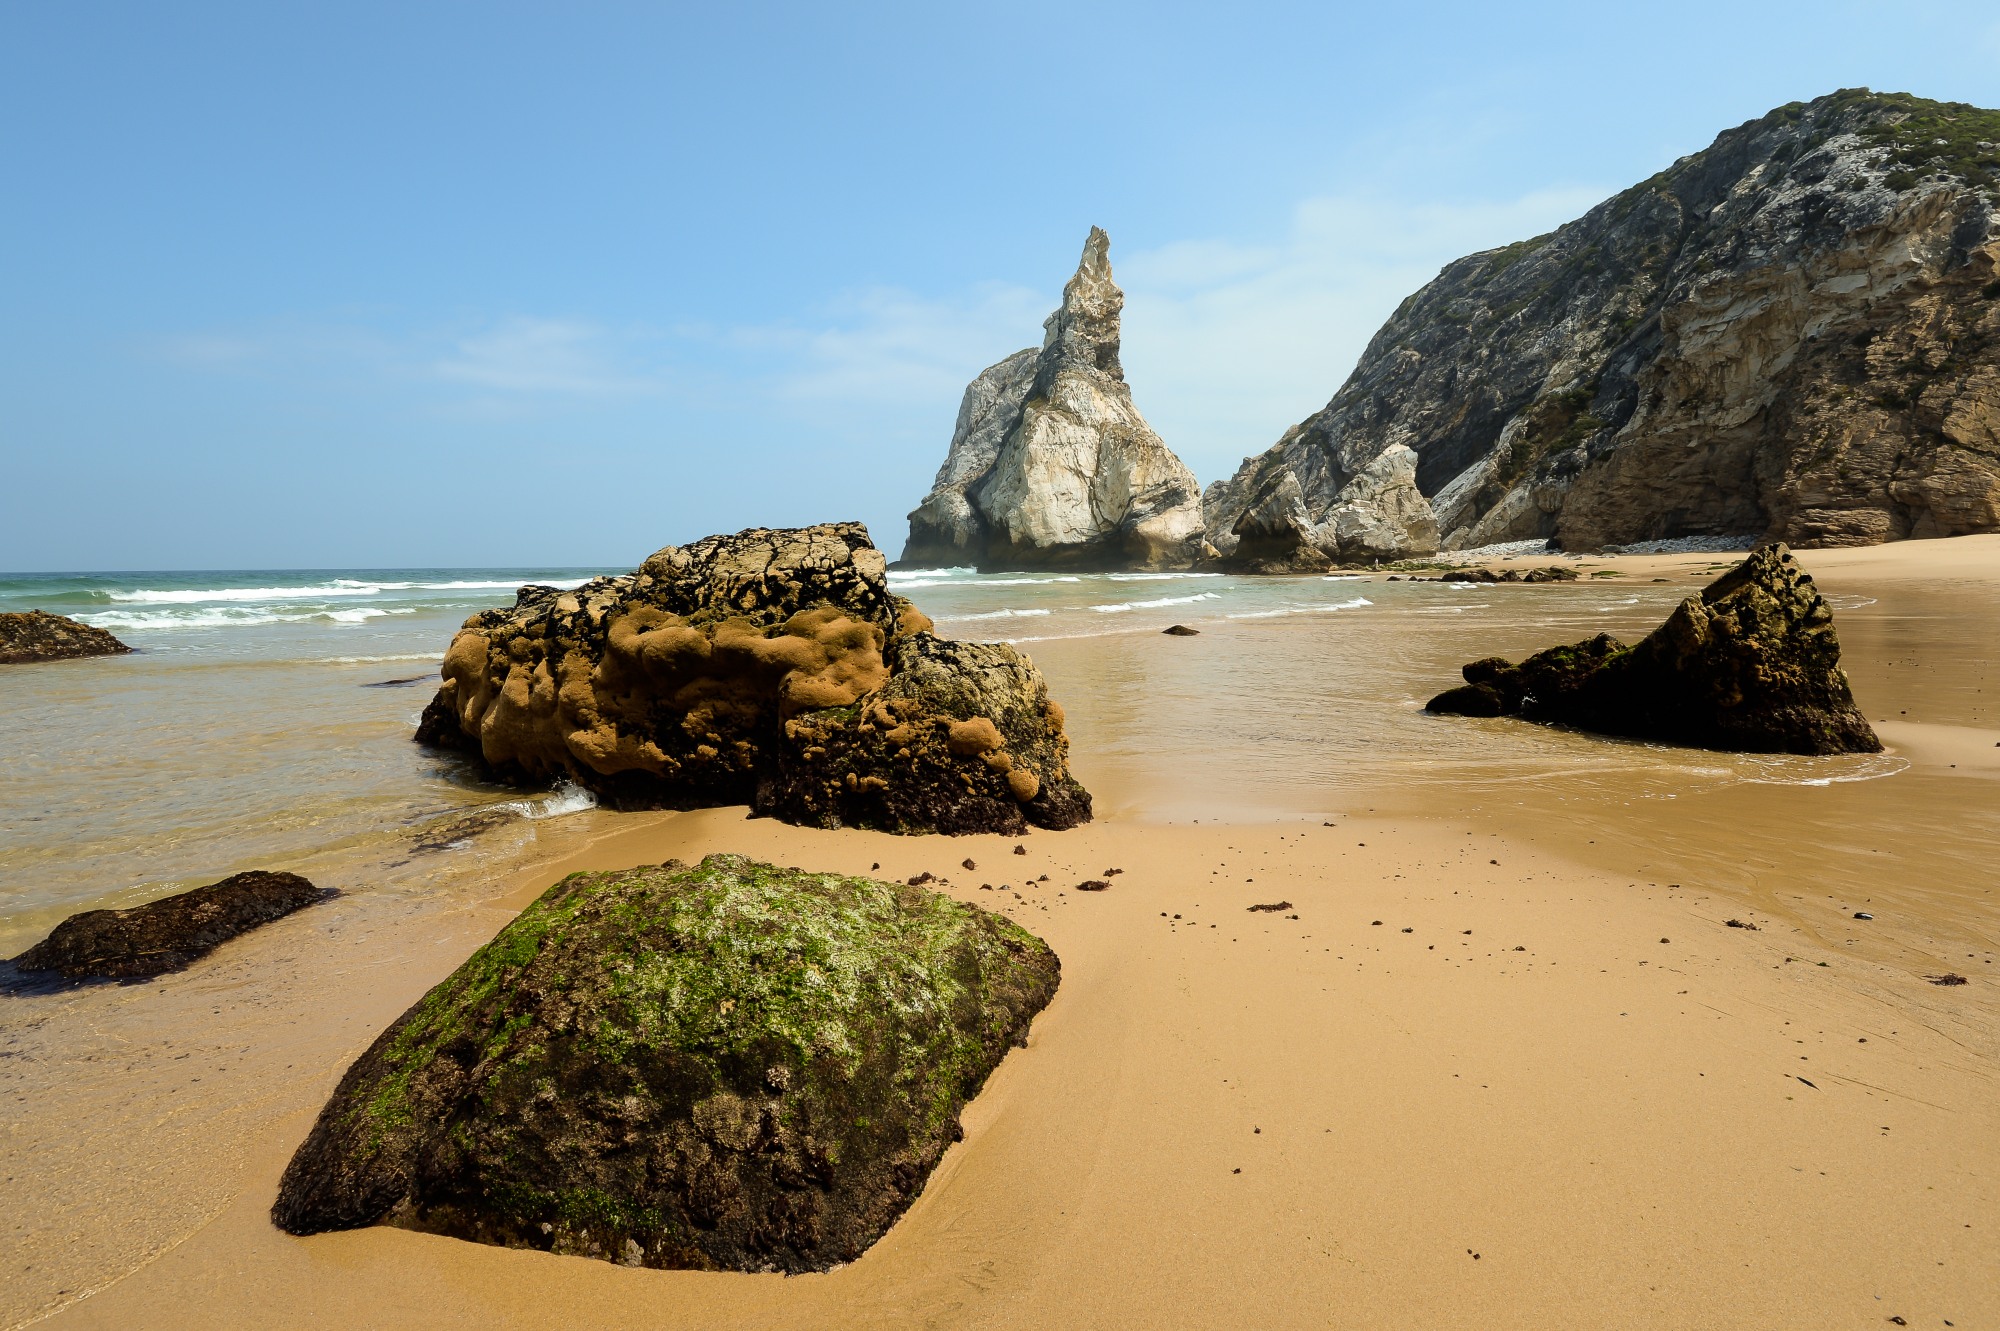 Praia da Ursa, near Cabo da Roca, Portugal...